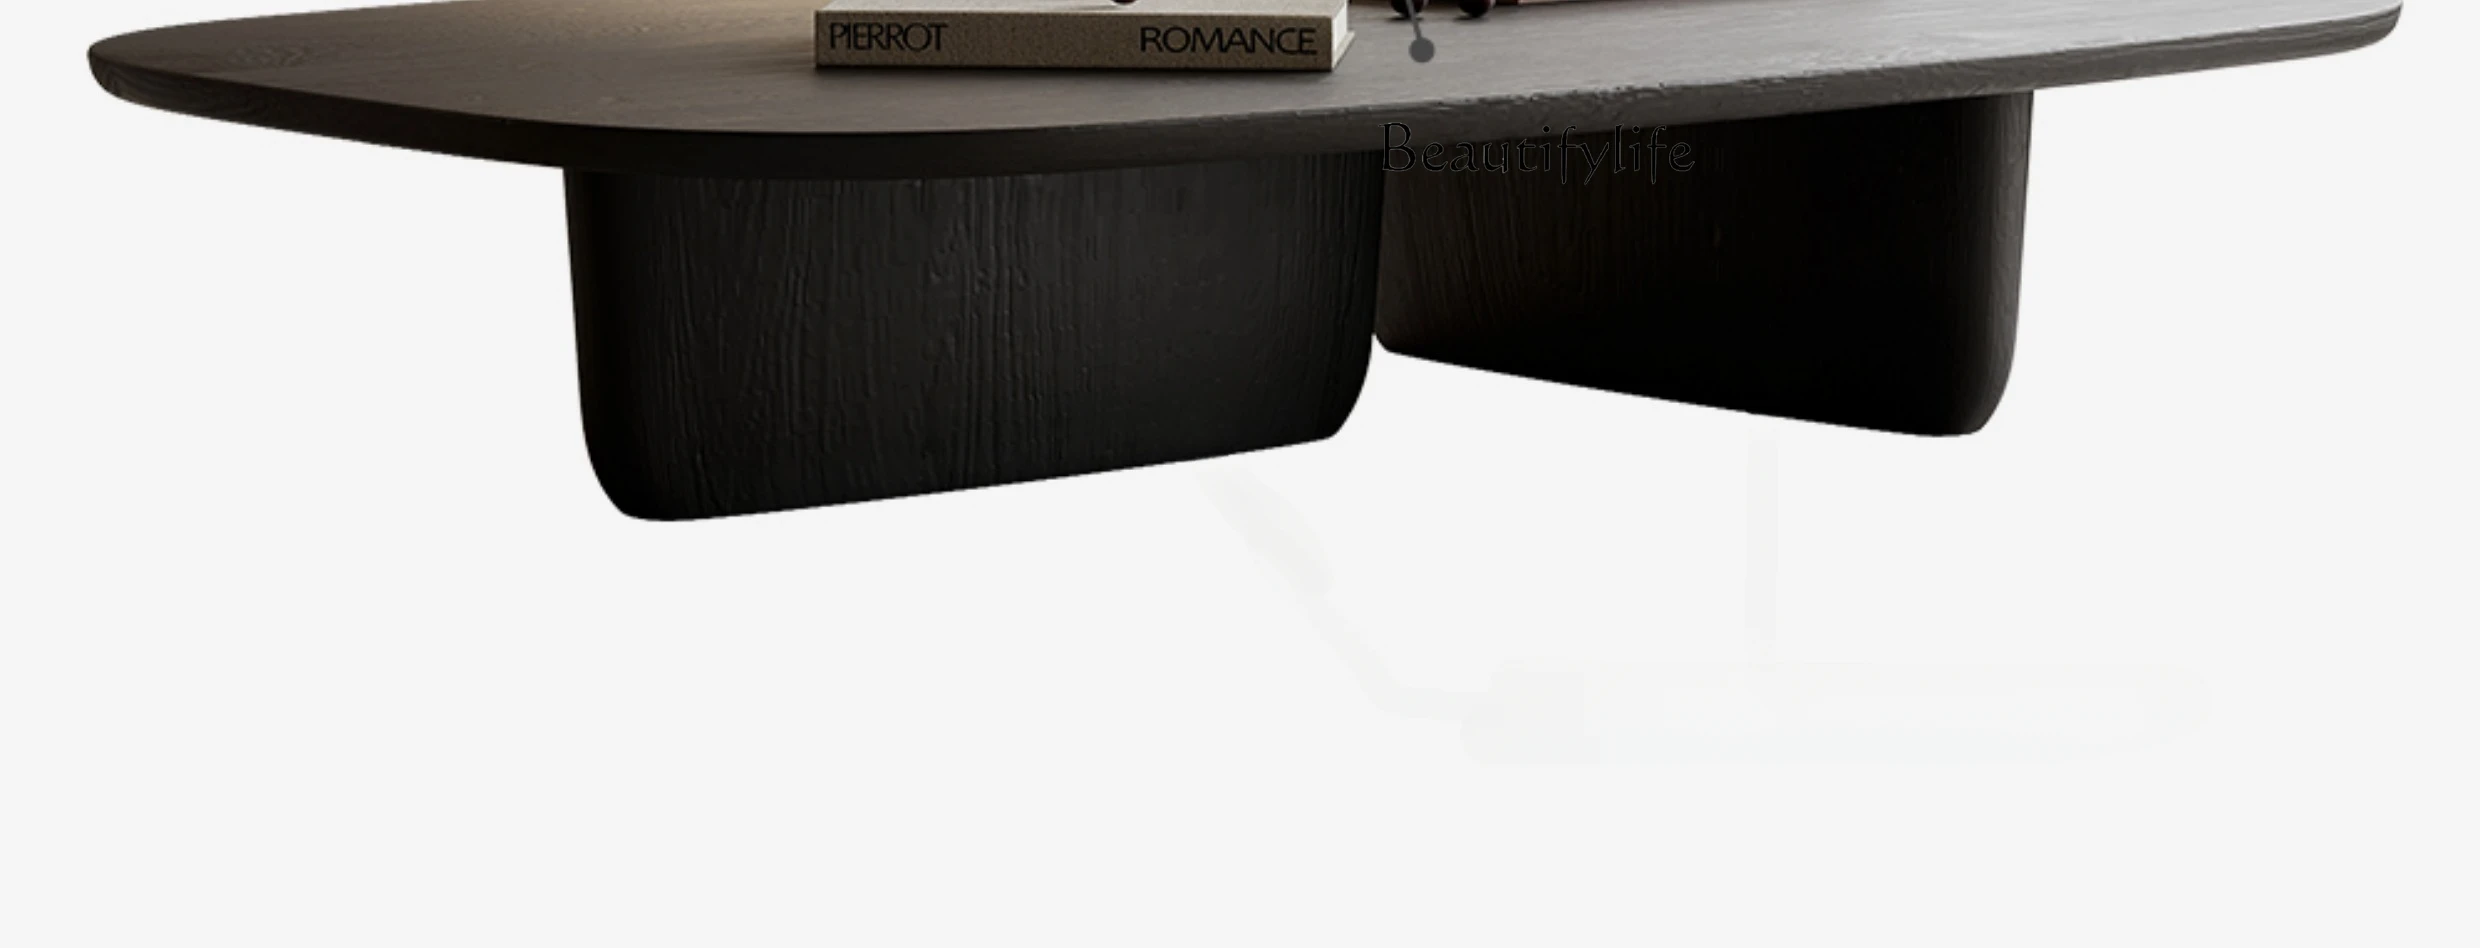 

Чайный столик Qiji Wind, черный, из массива дерева, квадратный, простой, модель для постели и завтрака, минималистичный чайный столик с короткими штанинами